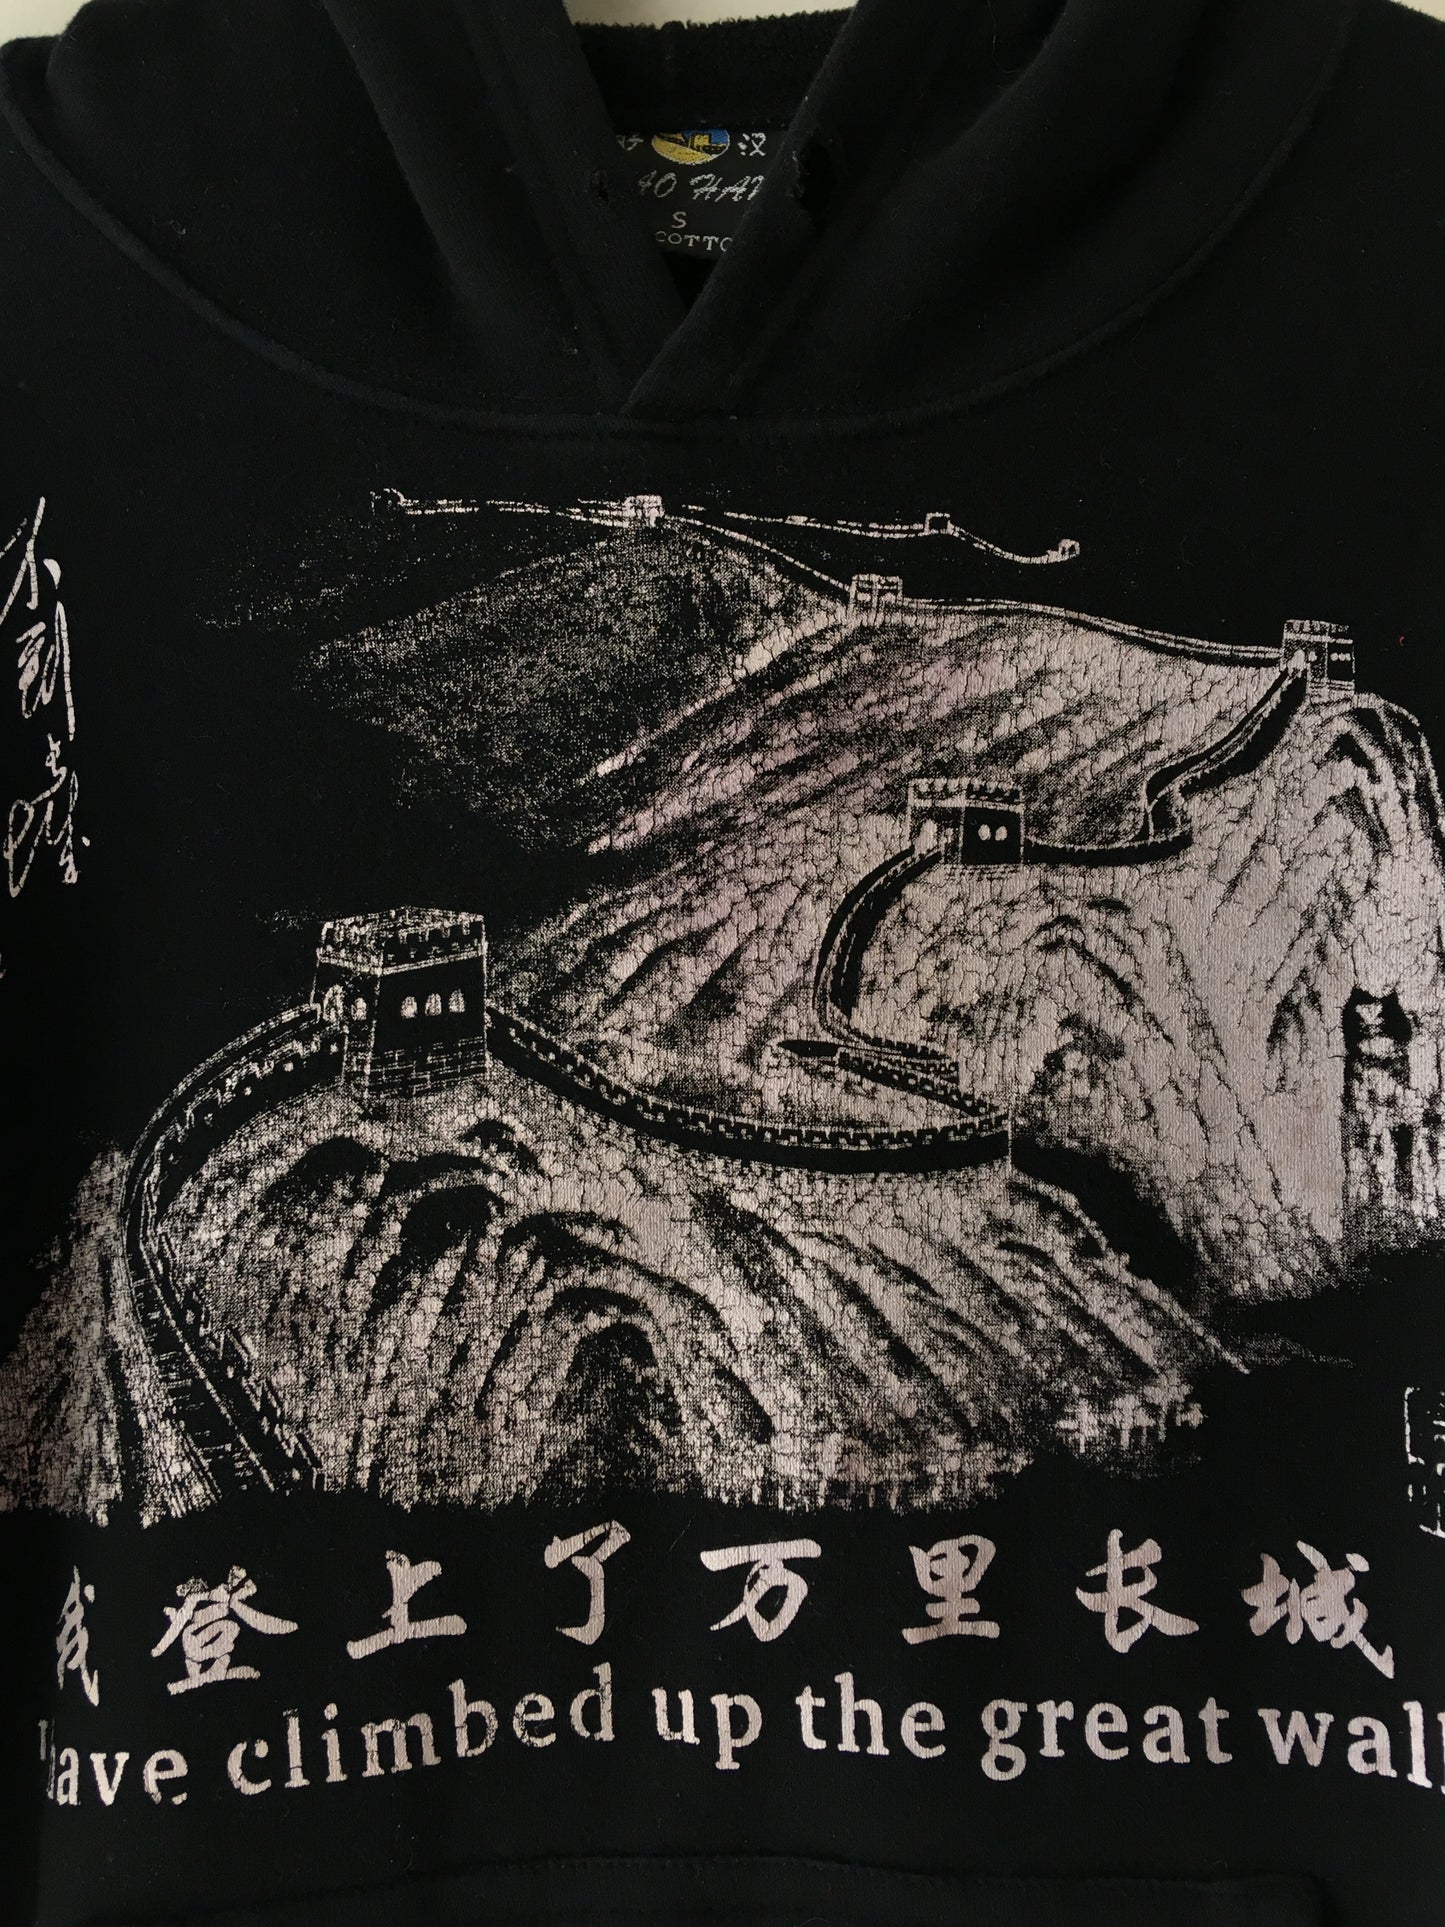 Great Wall sweatshirt